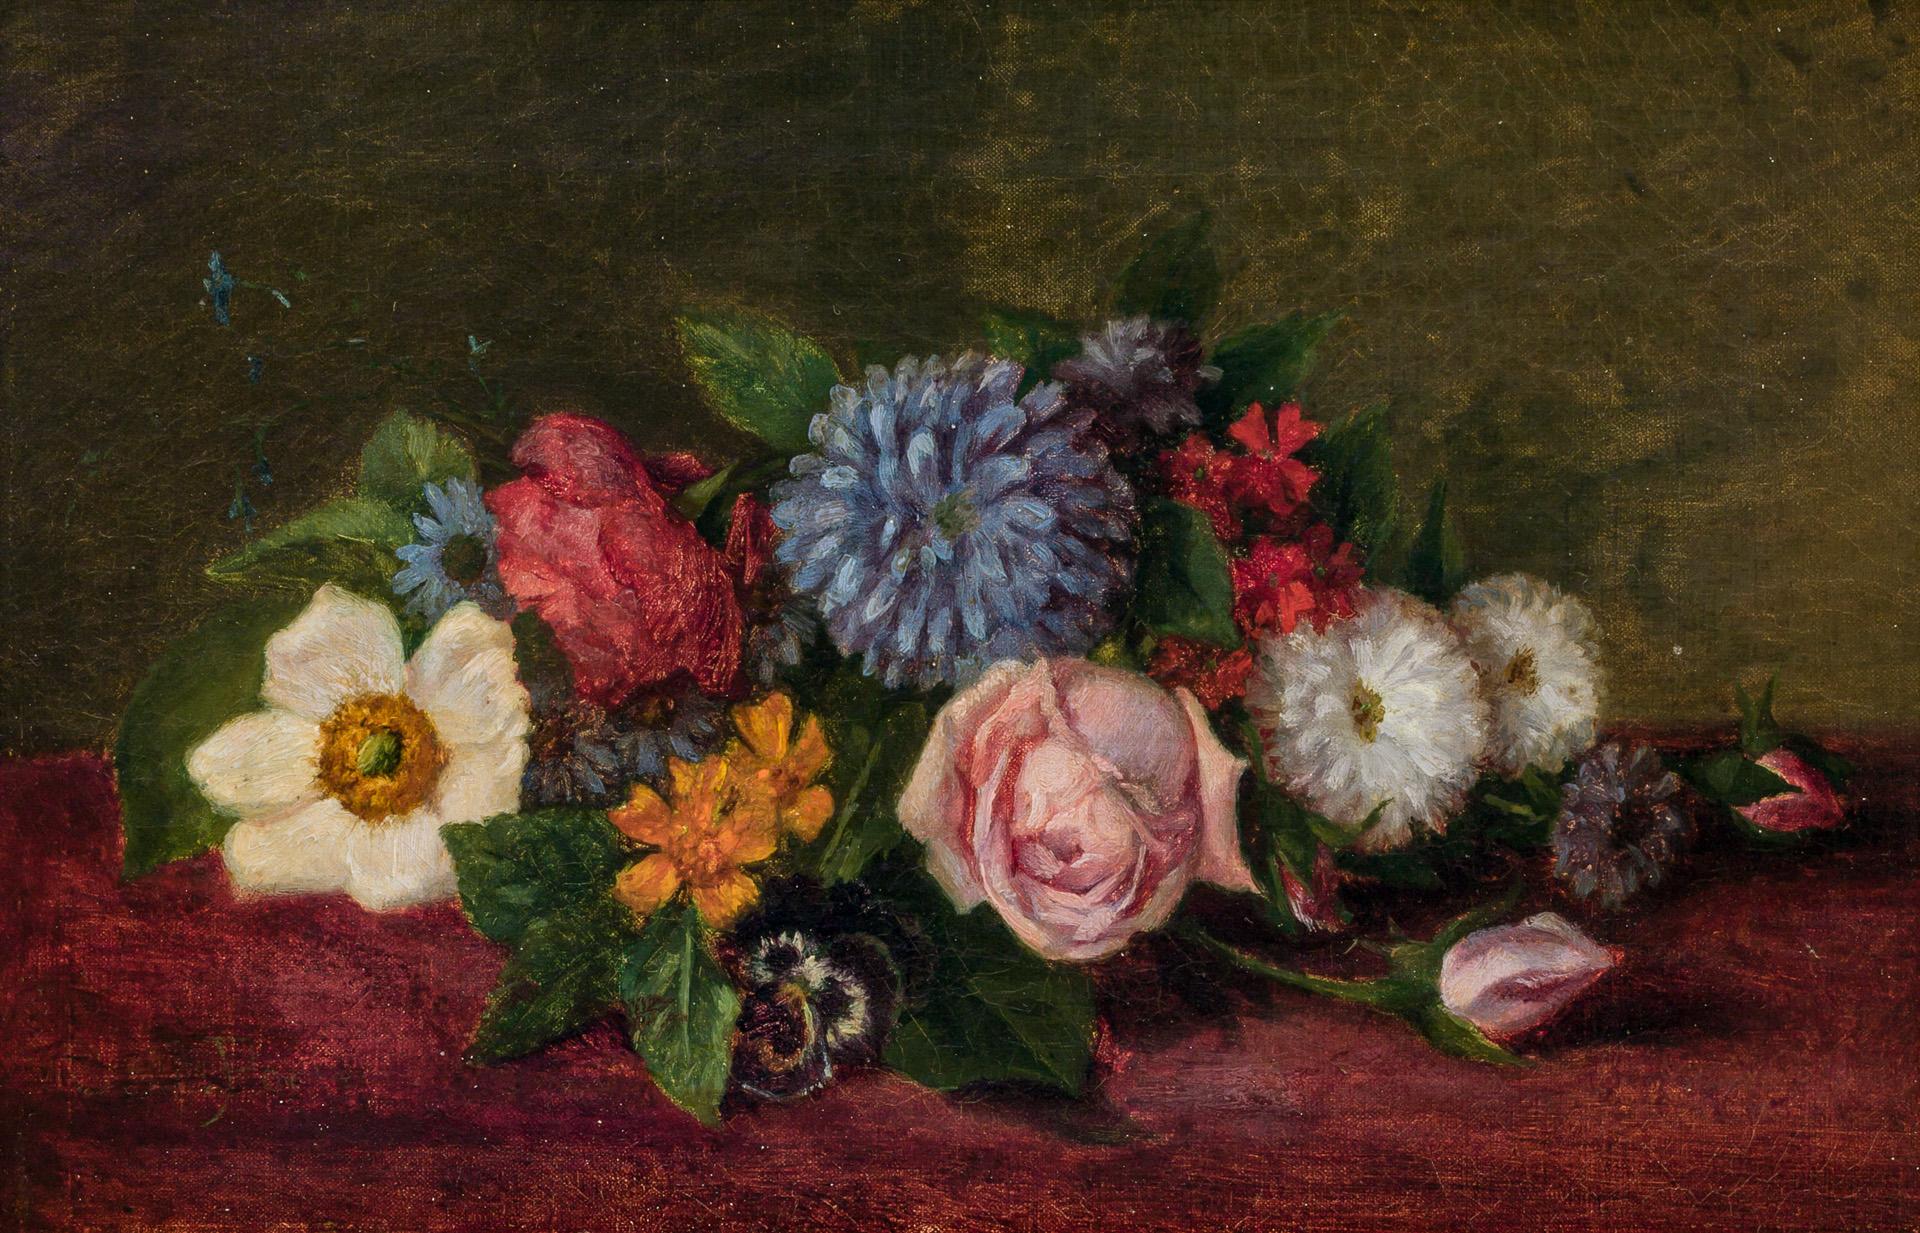 꽃 정물화(Floral Still Life) by Charles Ethan Porter - 약 1900년 - 19 x 29 cm 